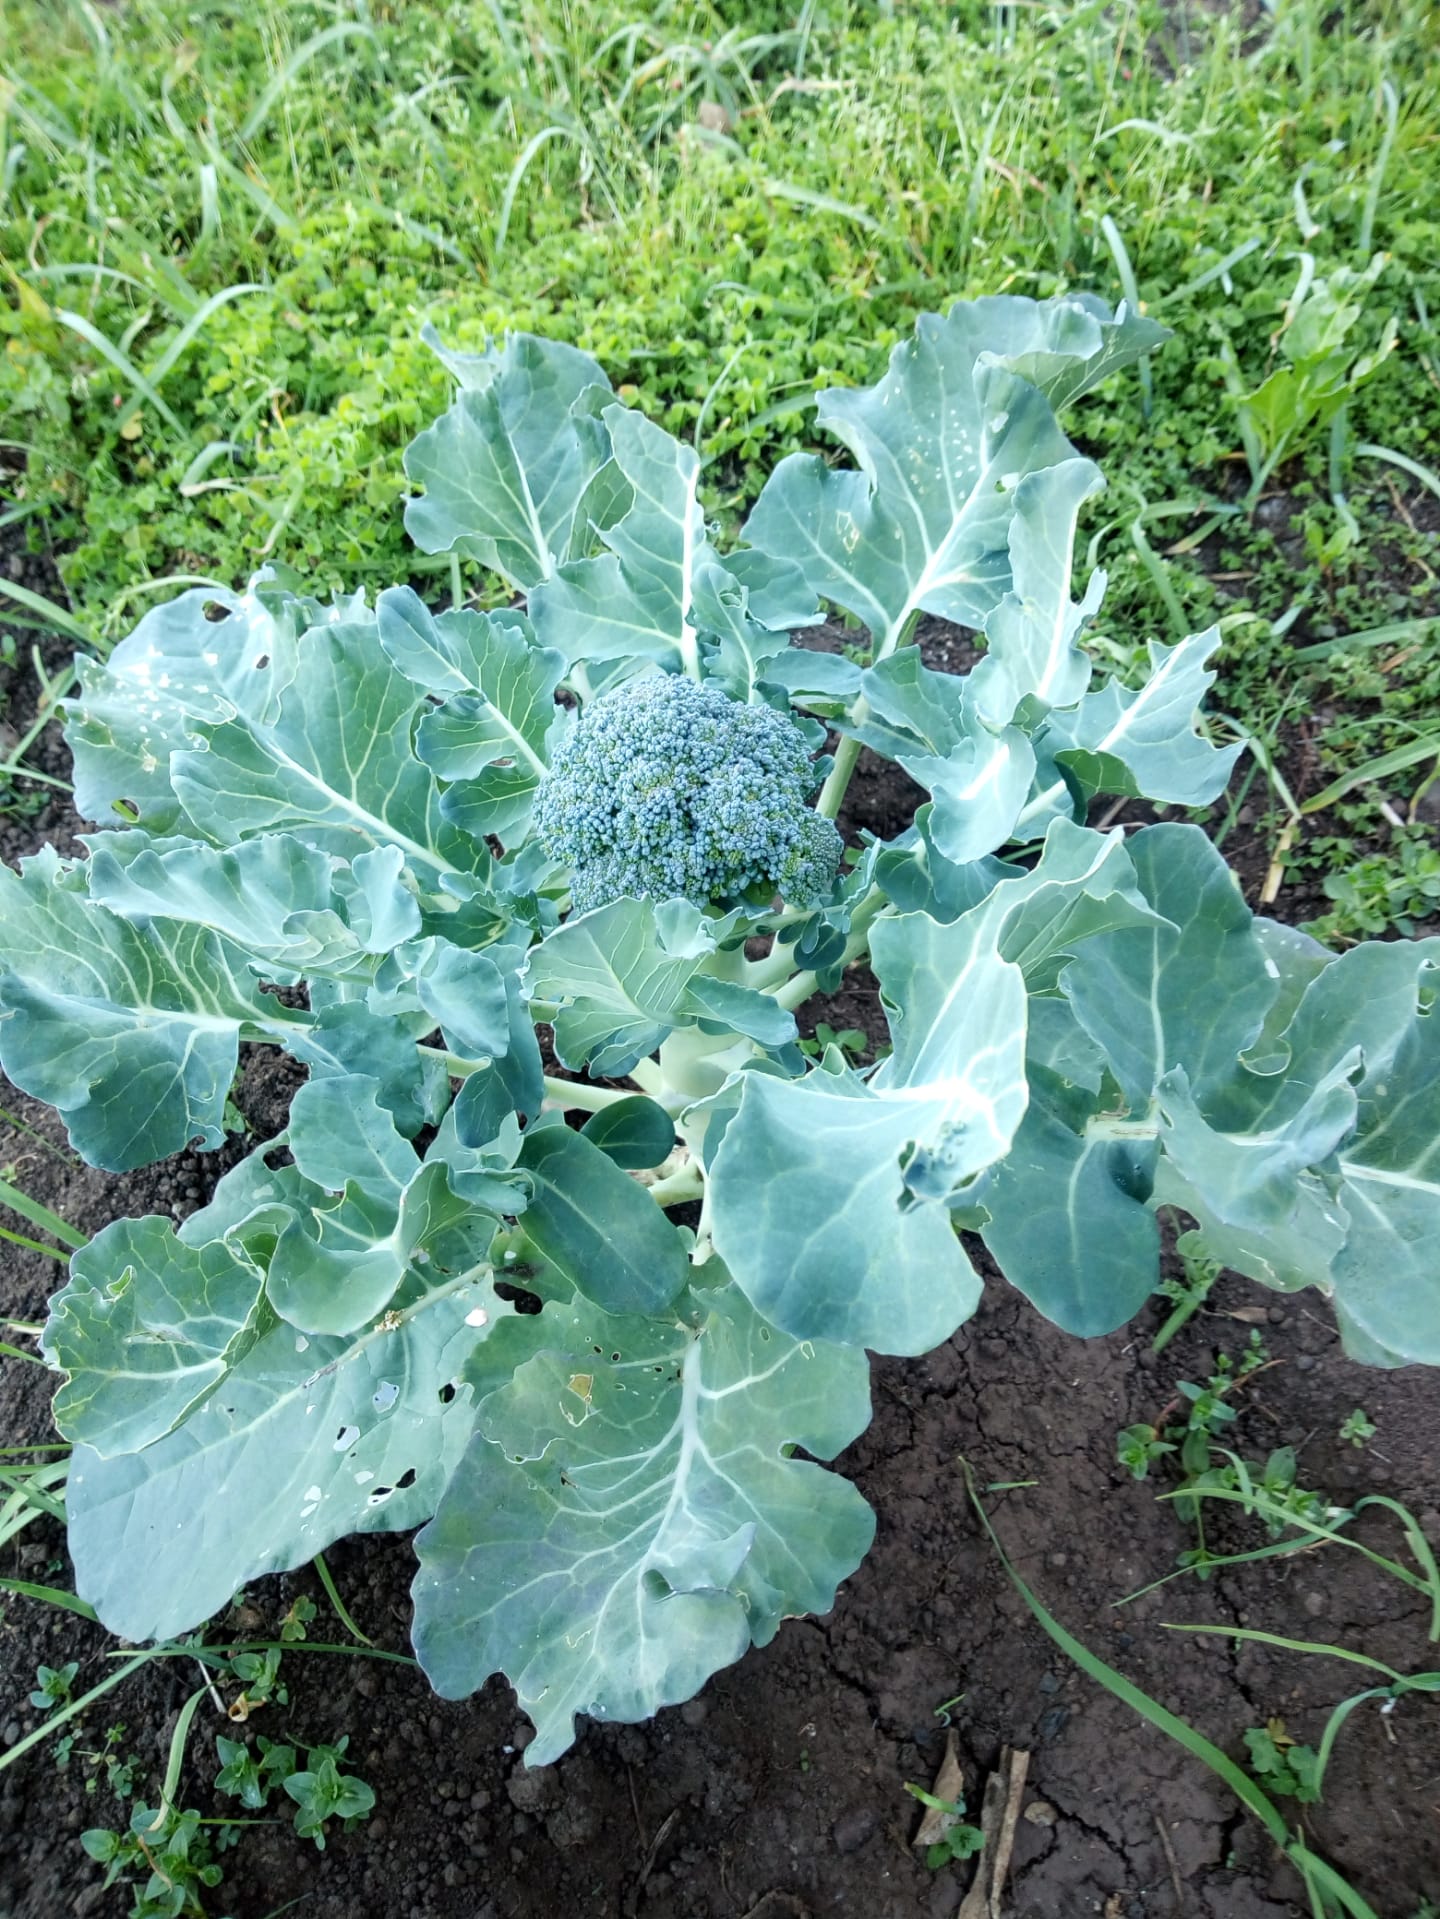 Os brócolos também já estão prontos para colheita.